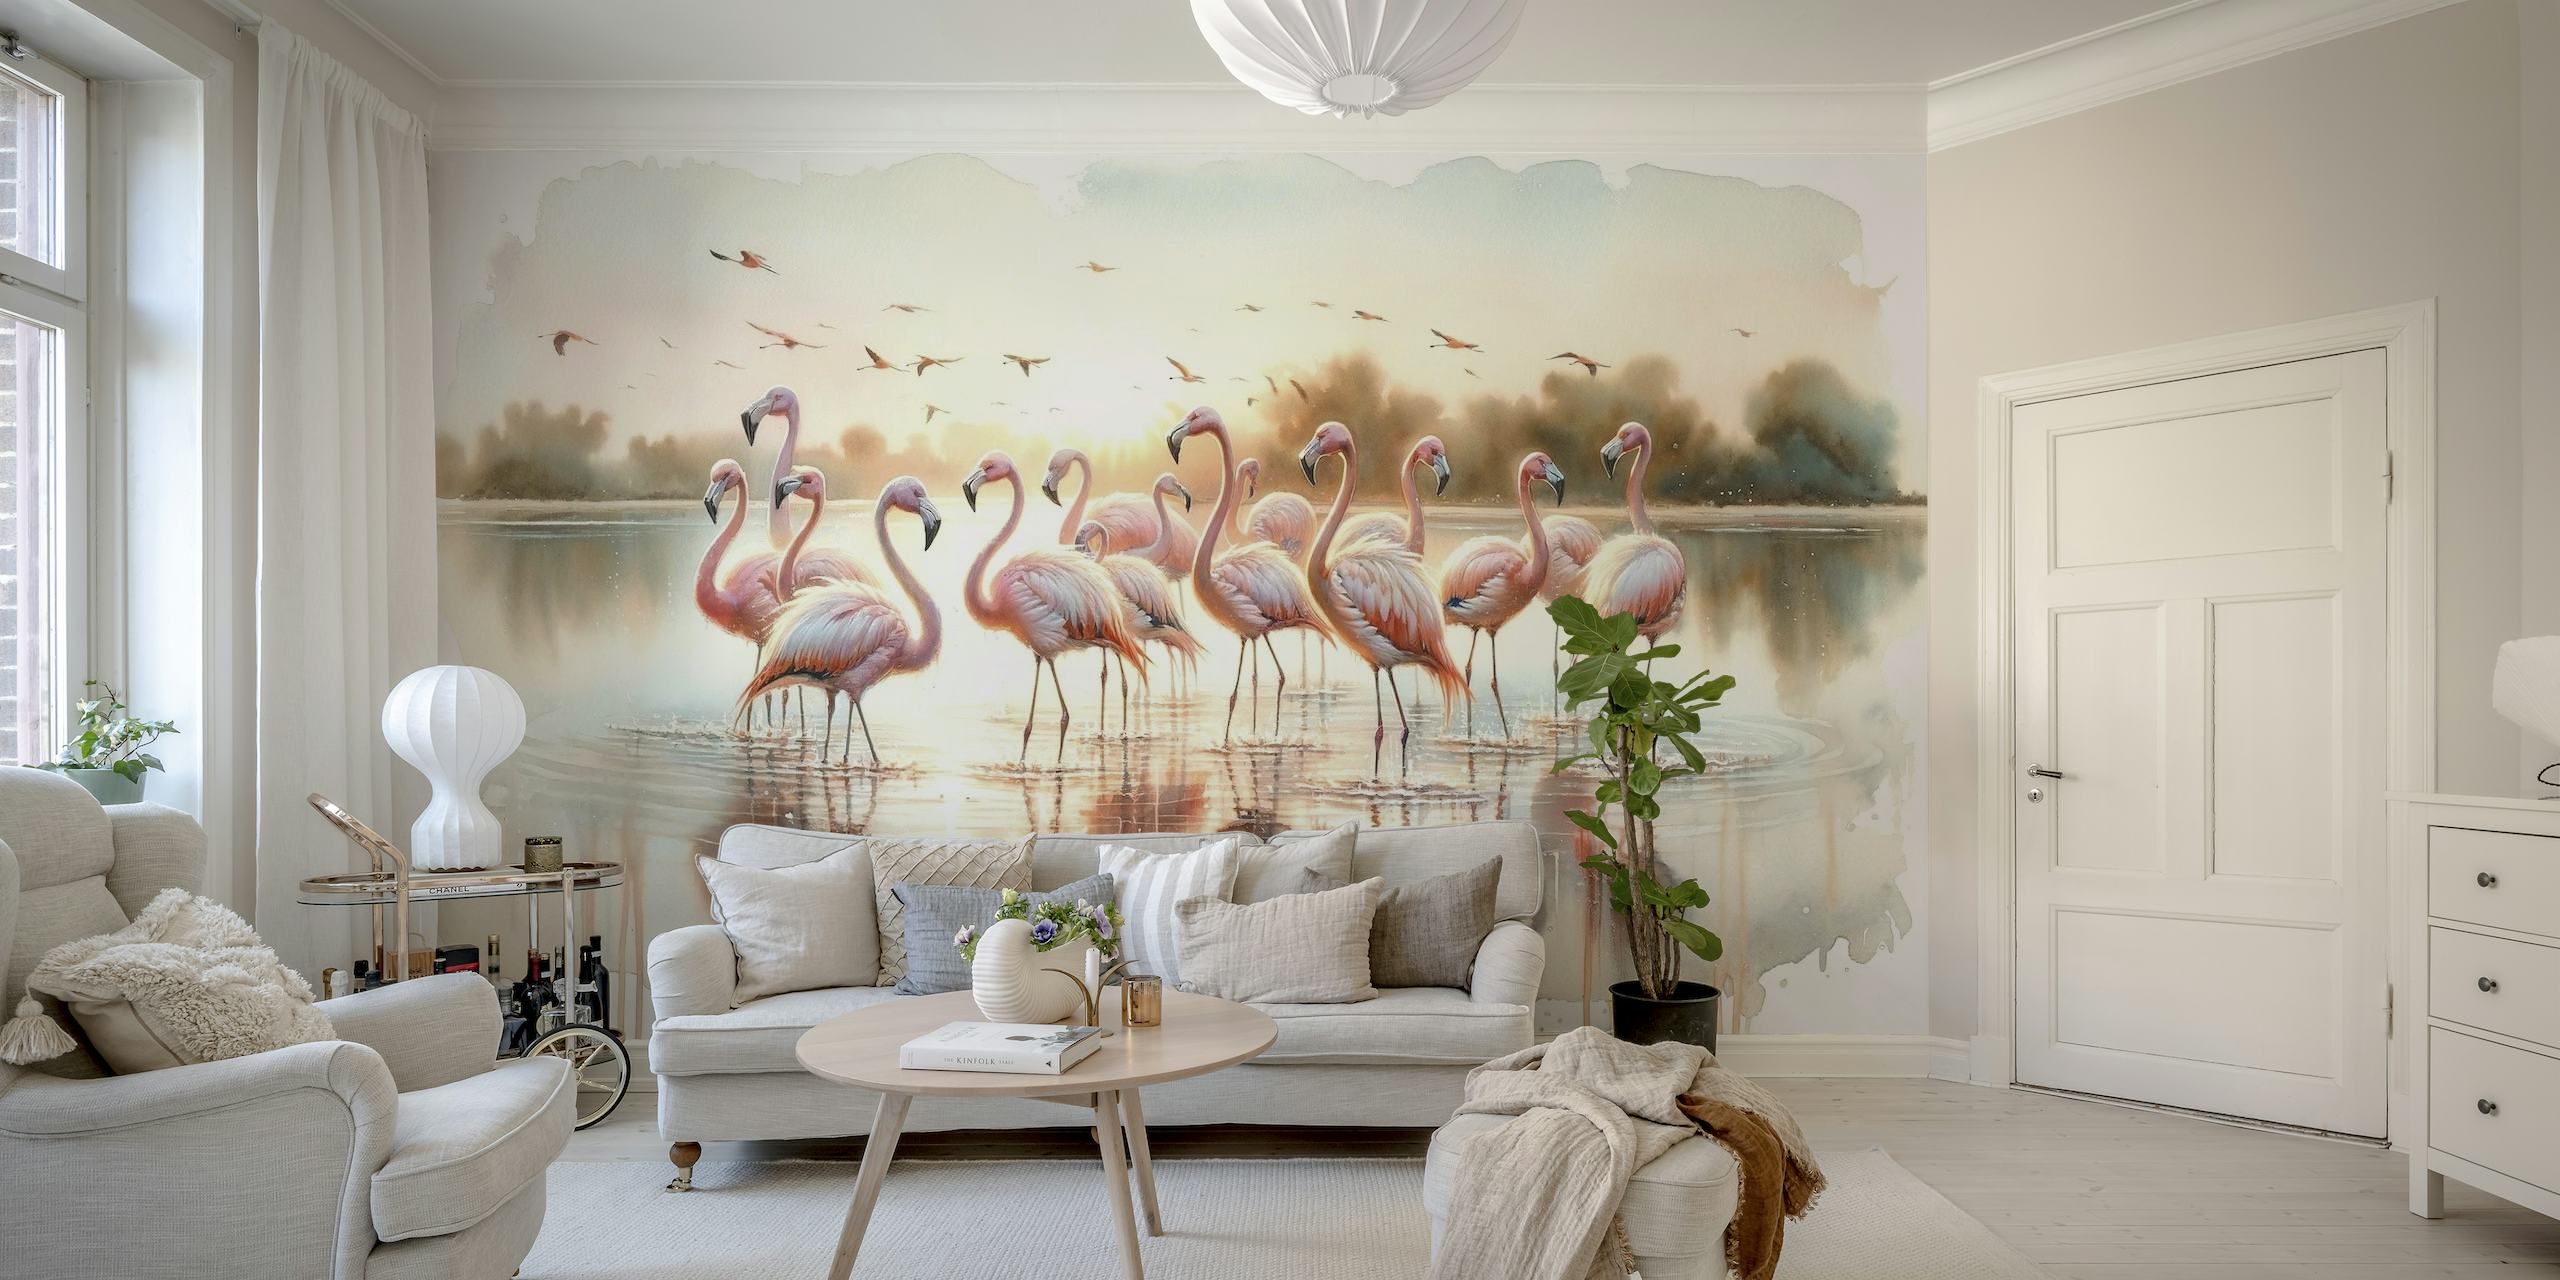 Spokojna skupina flaminga u izlasku sunca s odrazima vode na zidnoj tapeti u stilu akvarela.